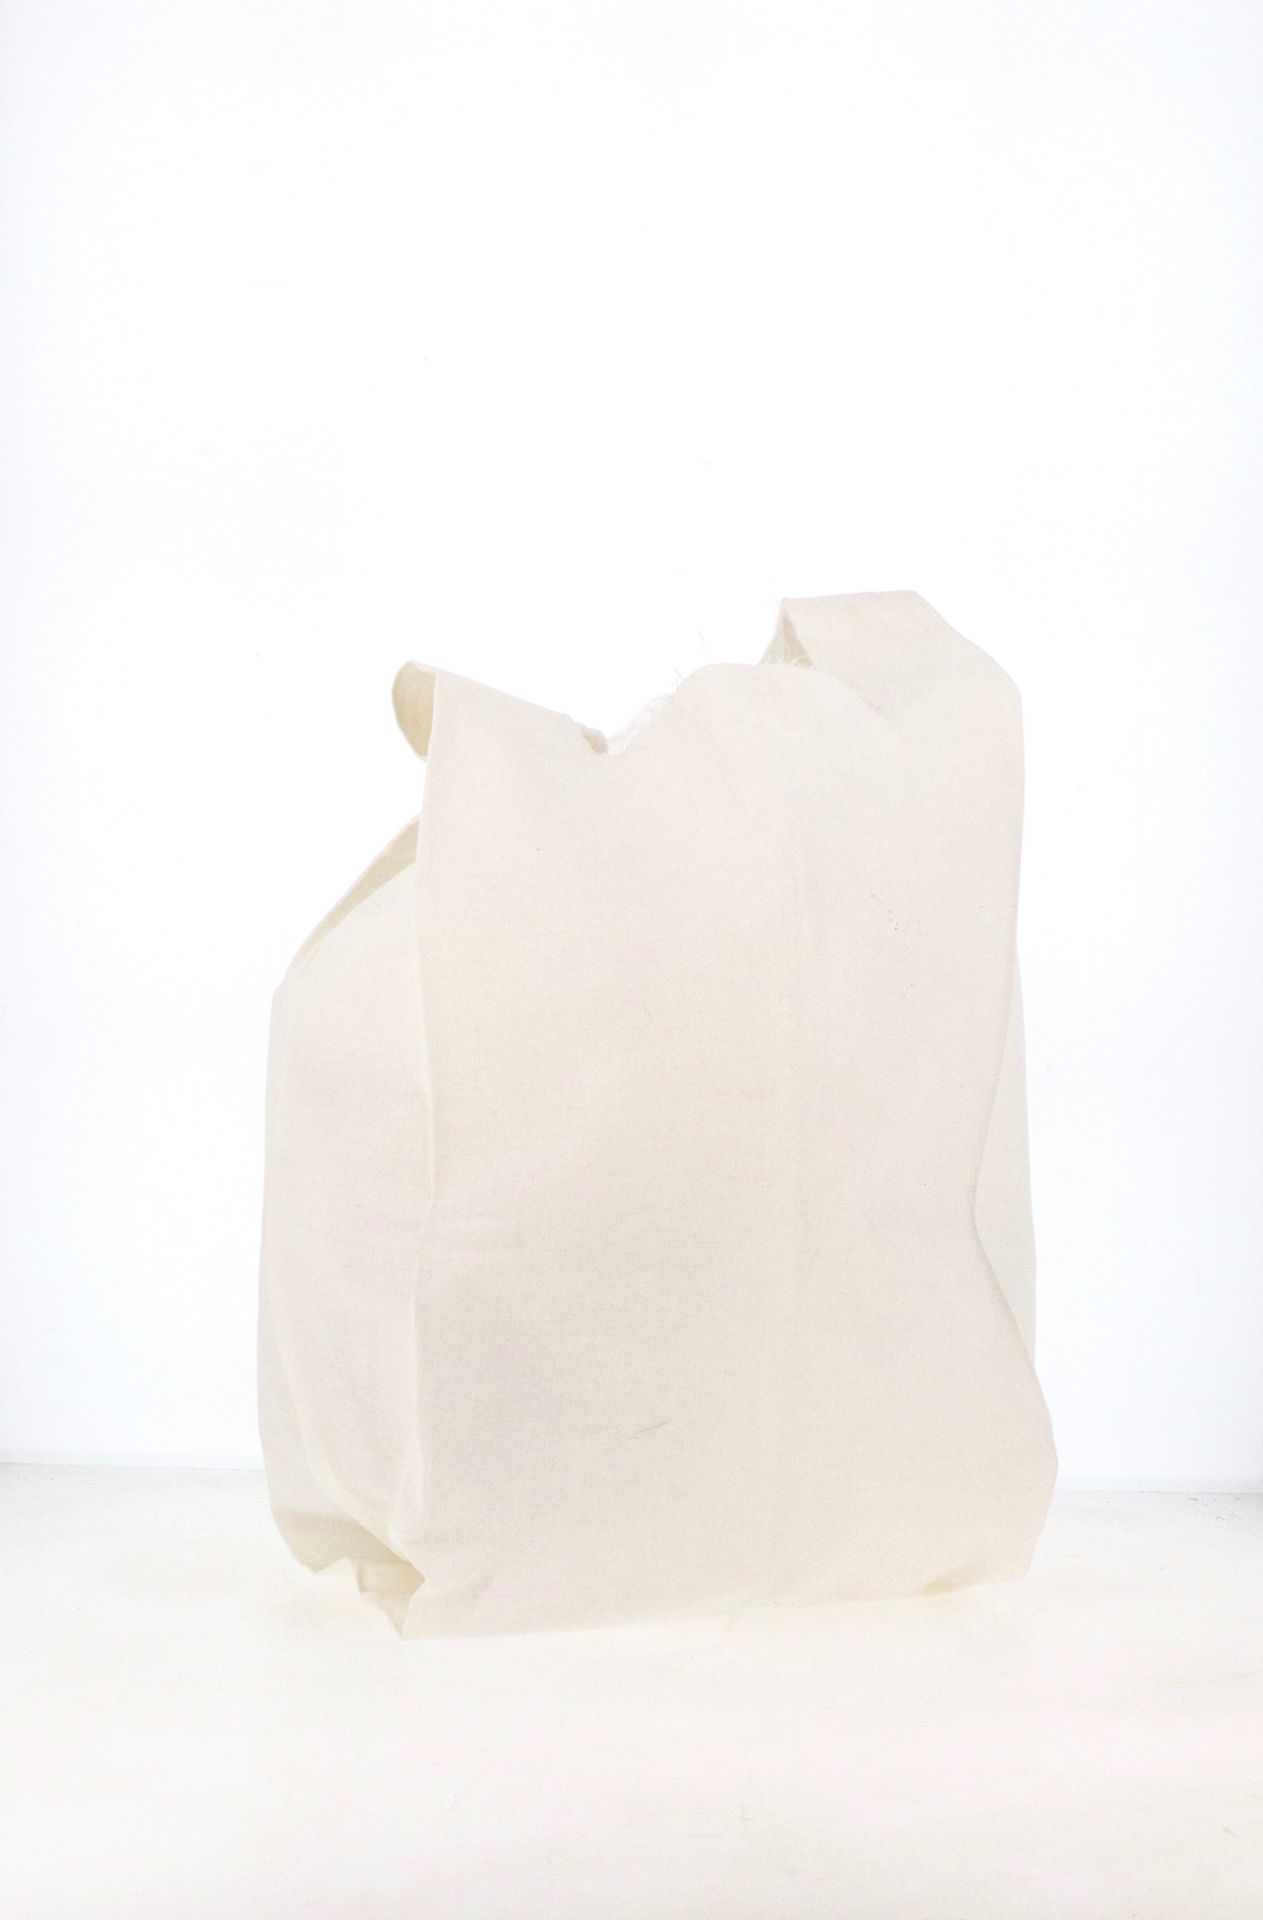 MAISON MARTIN MARGIELA Borsa della spesa 

in cotone bianco

circa 58 x 29 cm

S&hellip;